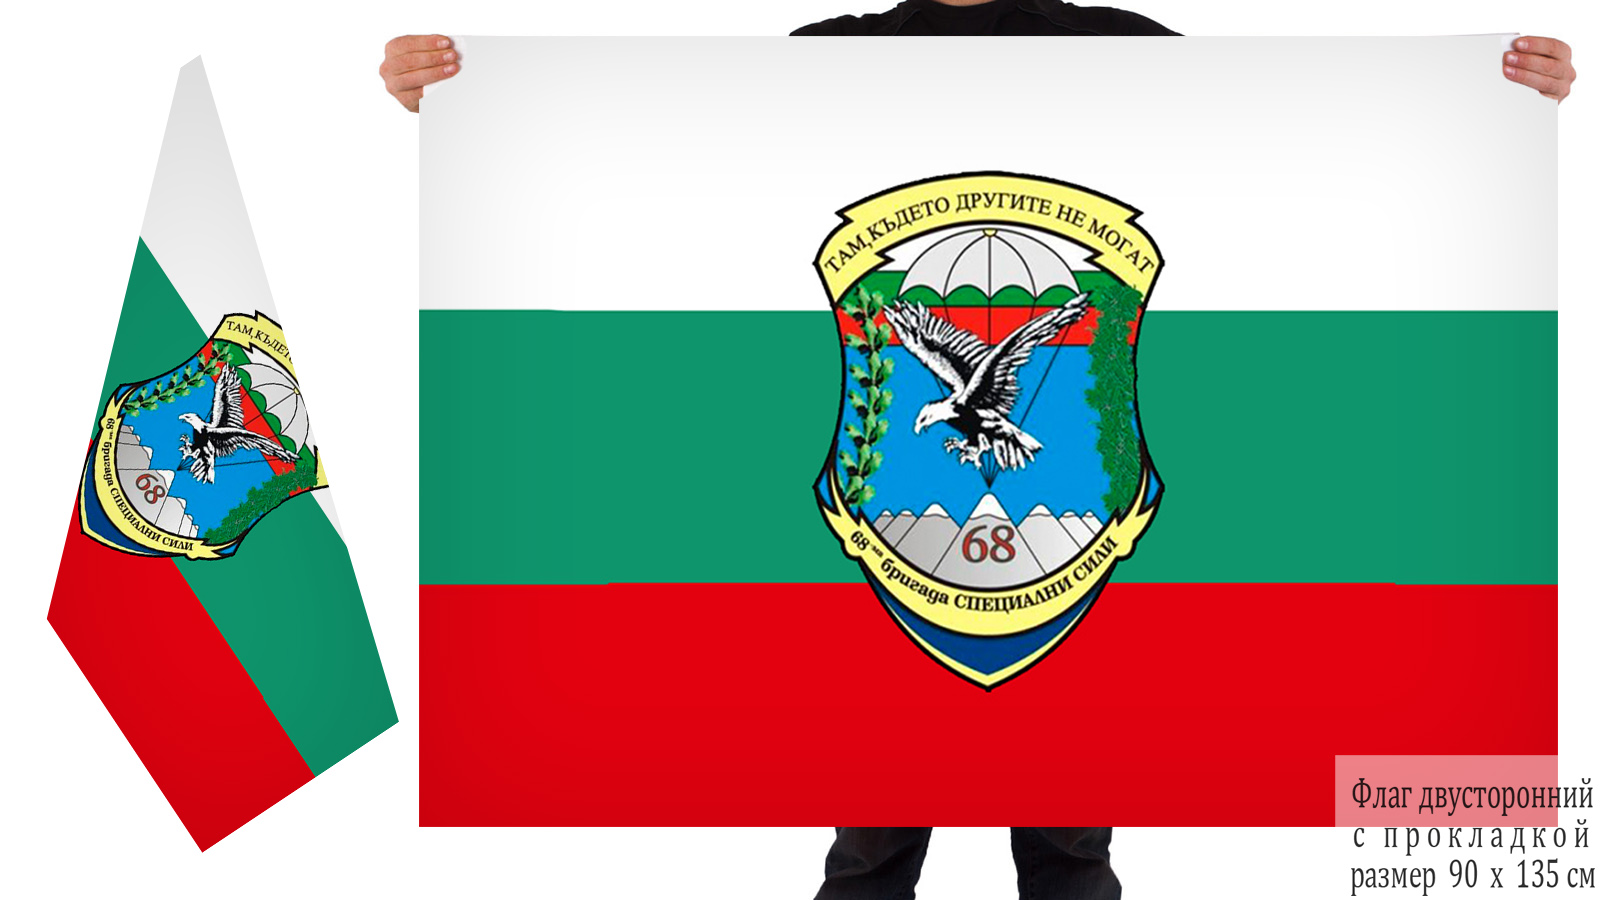 Двусторонний флаг 68 парашютно-десантной бригады специального назначения ВС Болгарии